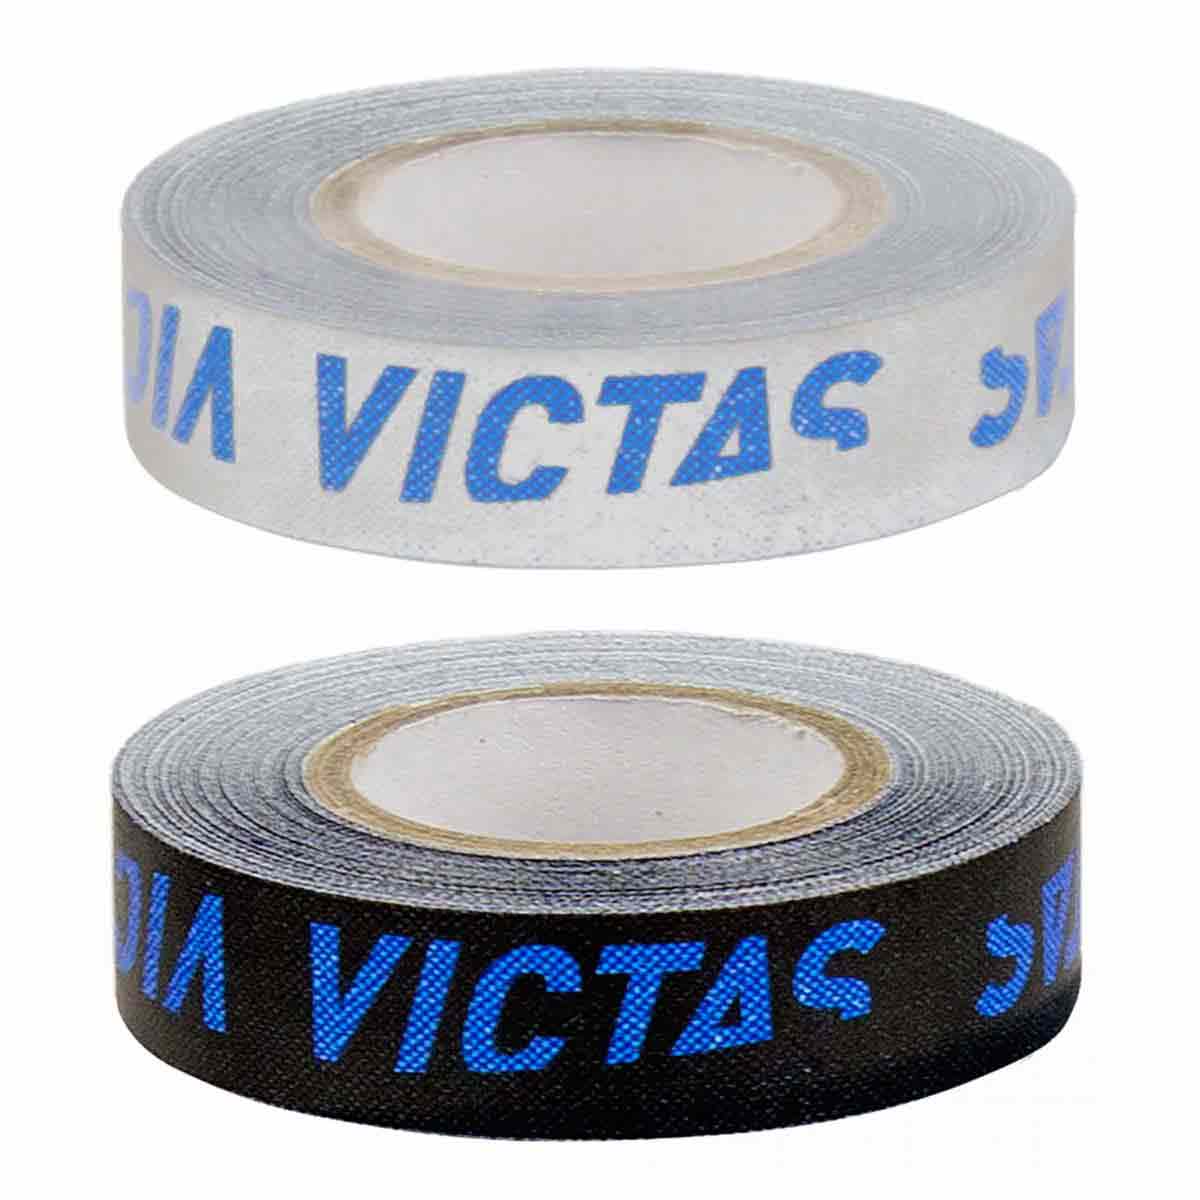 Victas Kantenband 12mm/5m schwarz/blau